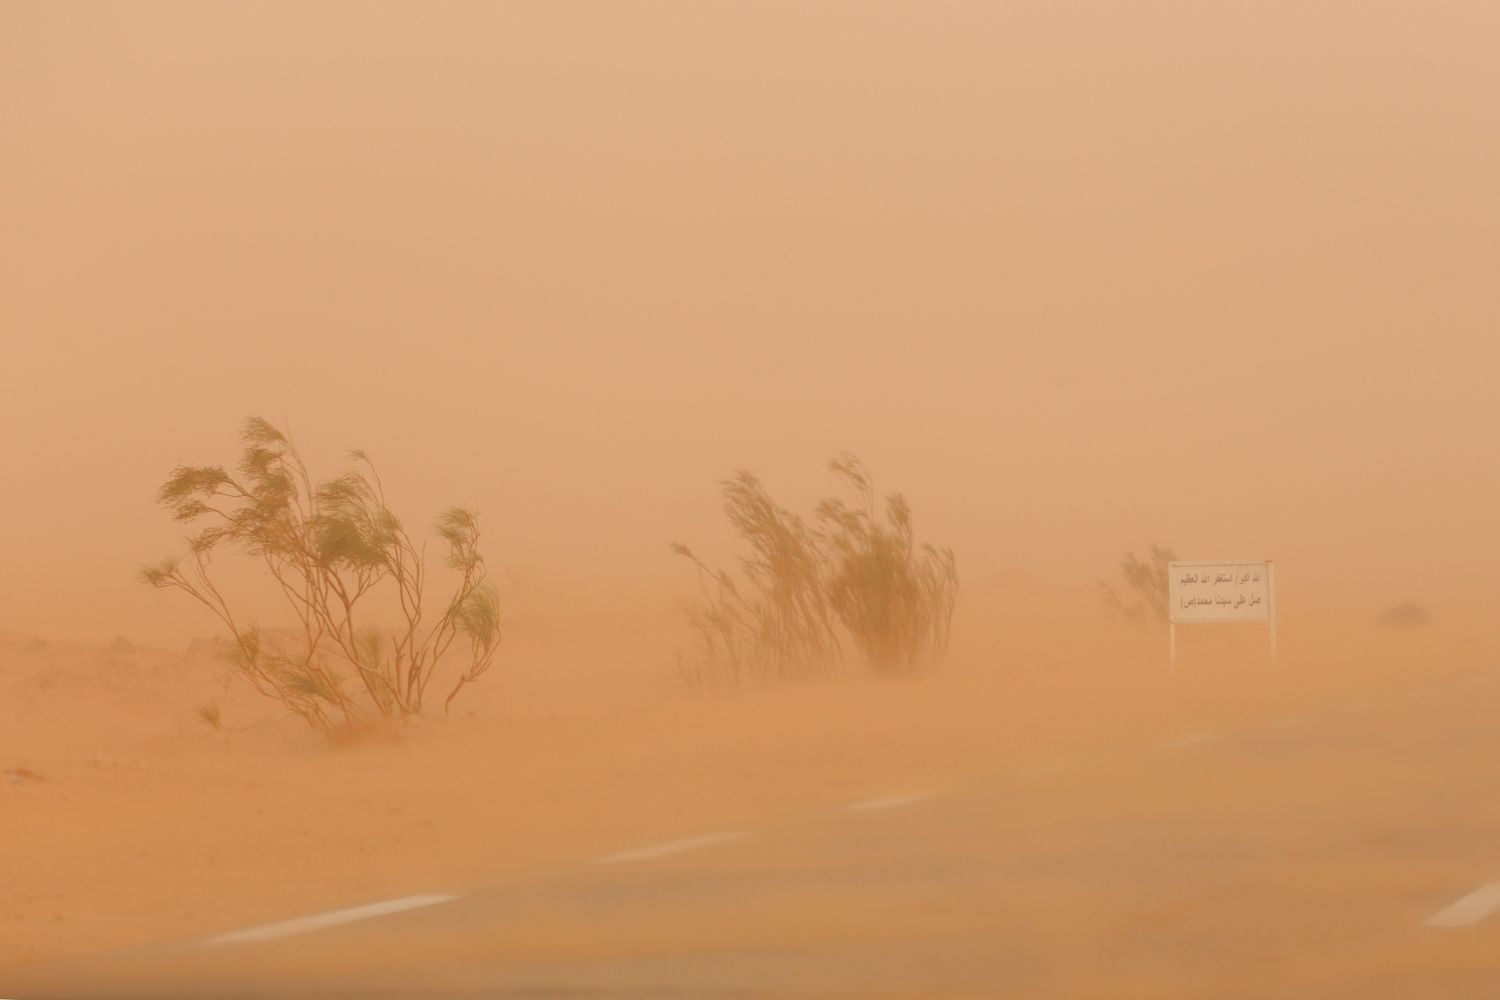 NiMet Reveals Regions To Witness Three Days Dust Haze From Wednesday